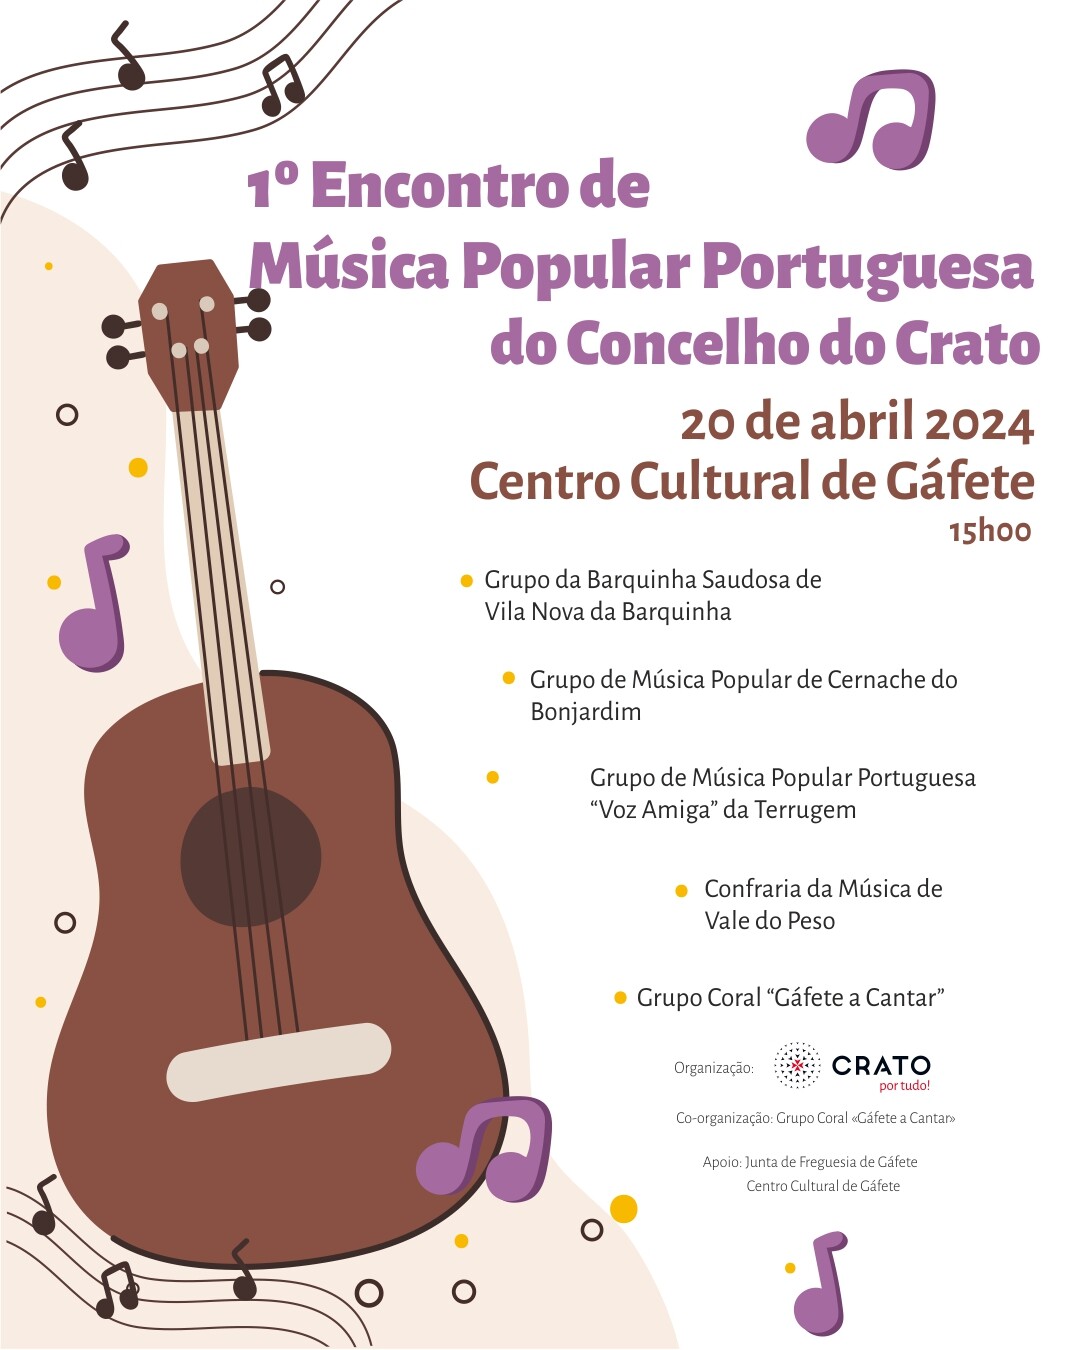 Crato 1 Encontro de Musica Popular Portuguesa do Concelho